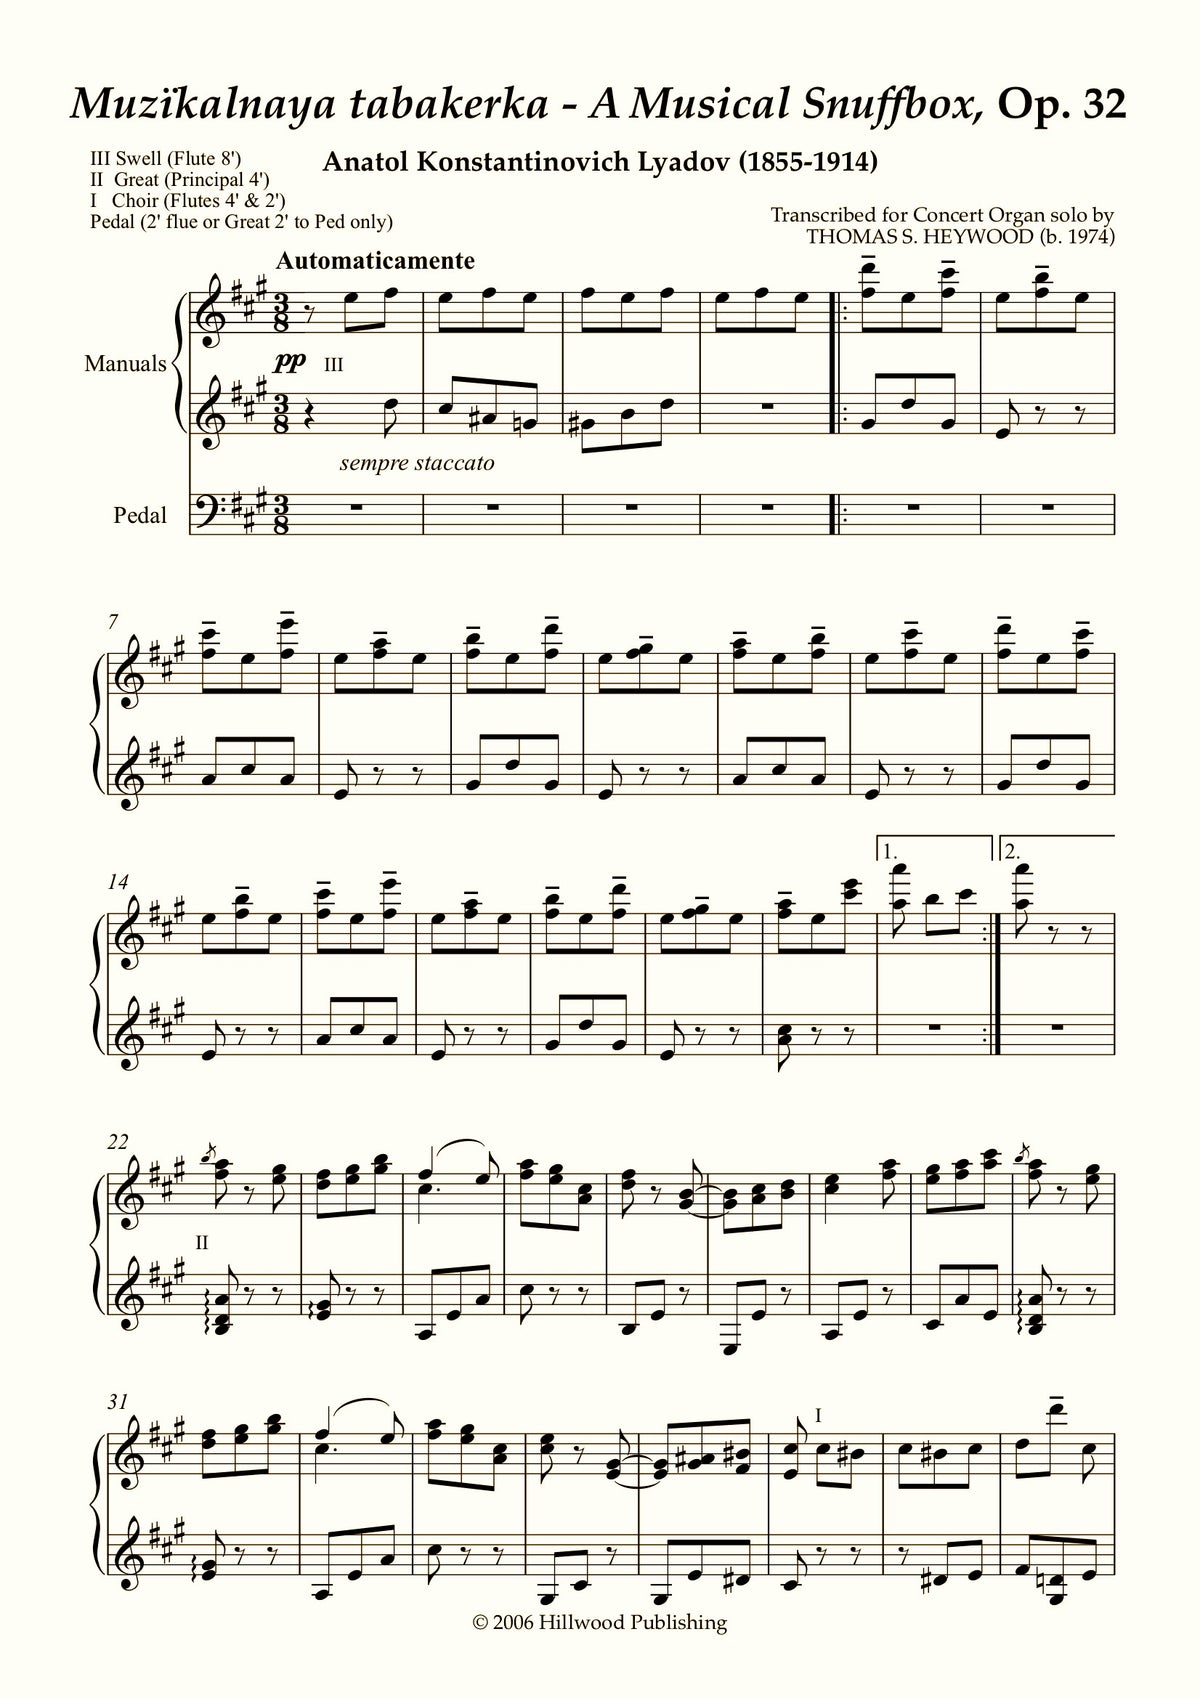 Lyadov/Heywood - A Musical Snuffbox, Op. 32 (Score) - Concert Organ International